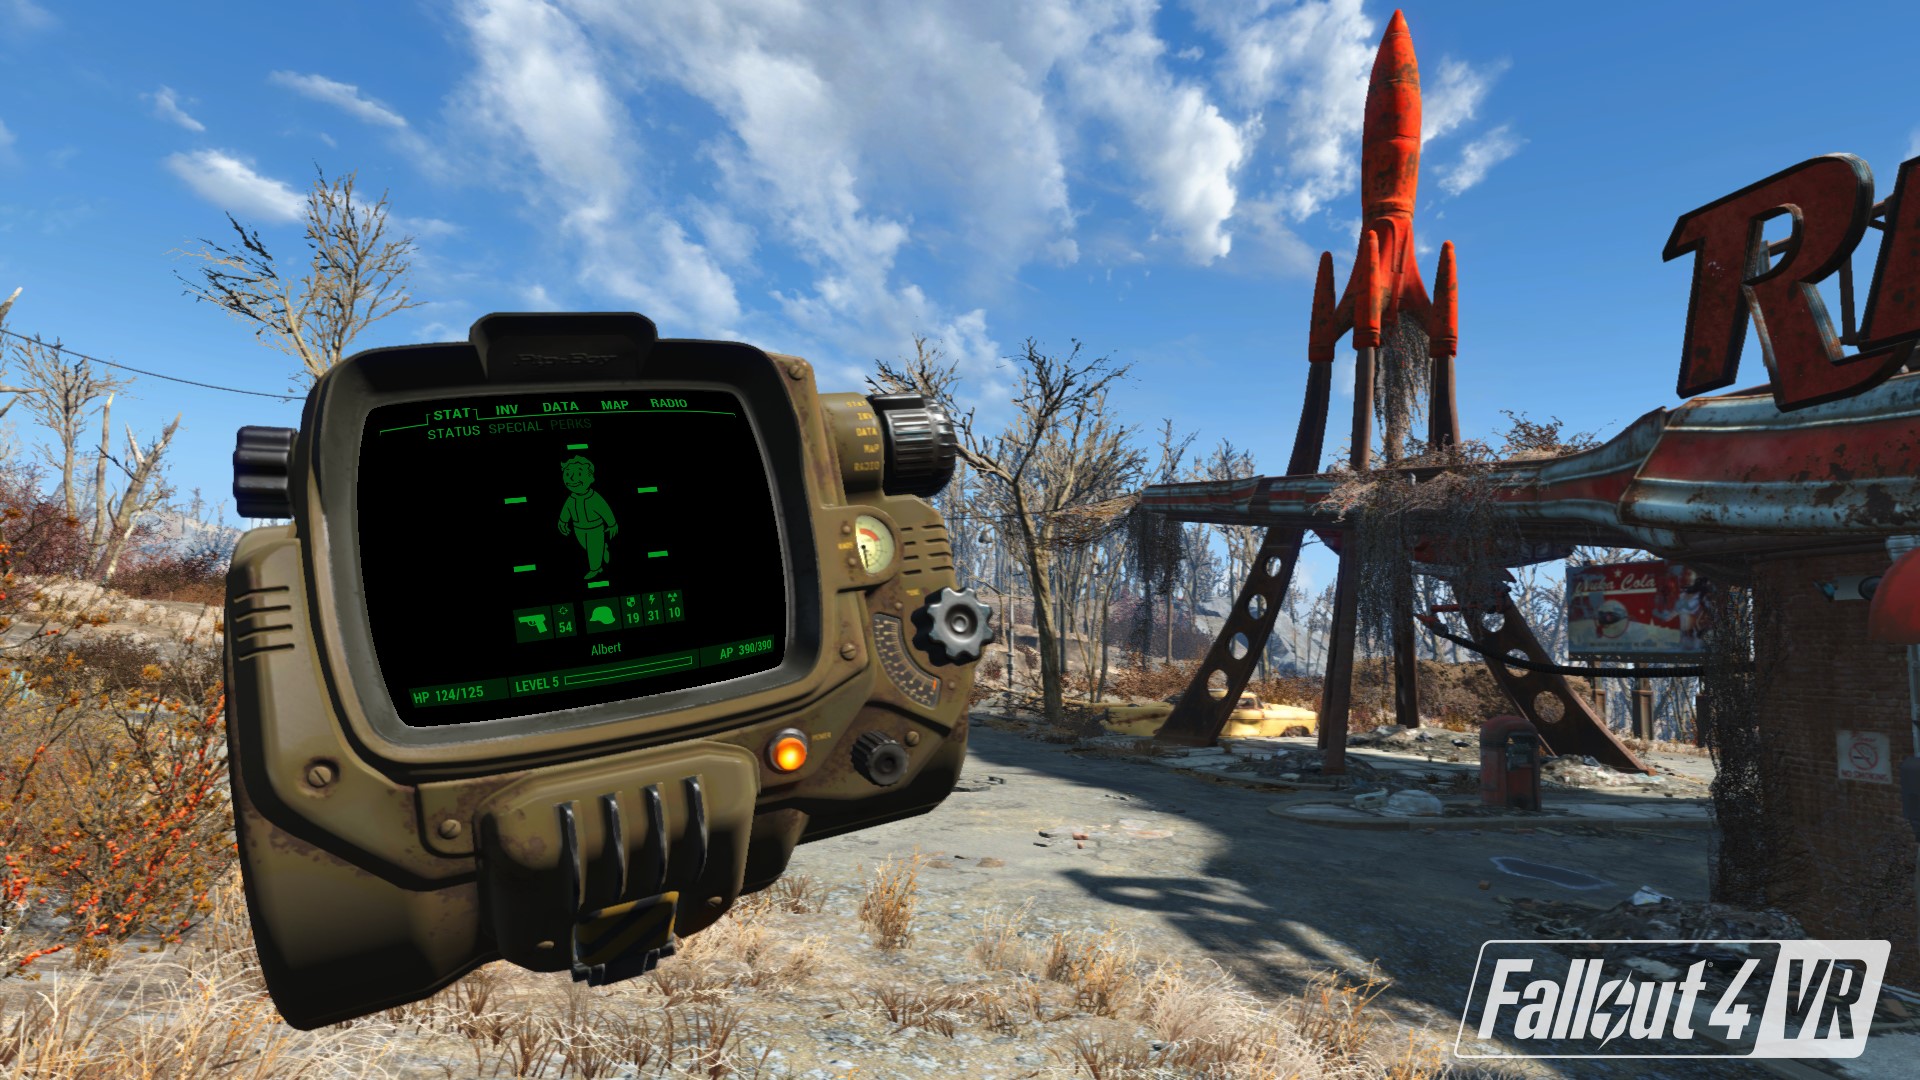 Fallout 4 VR (steam key) -- RU